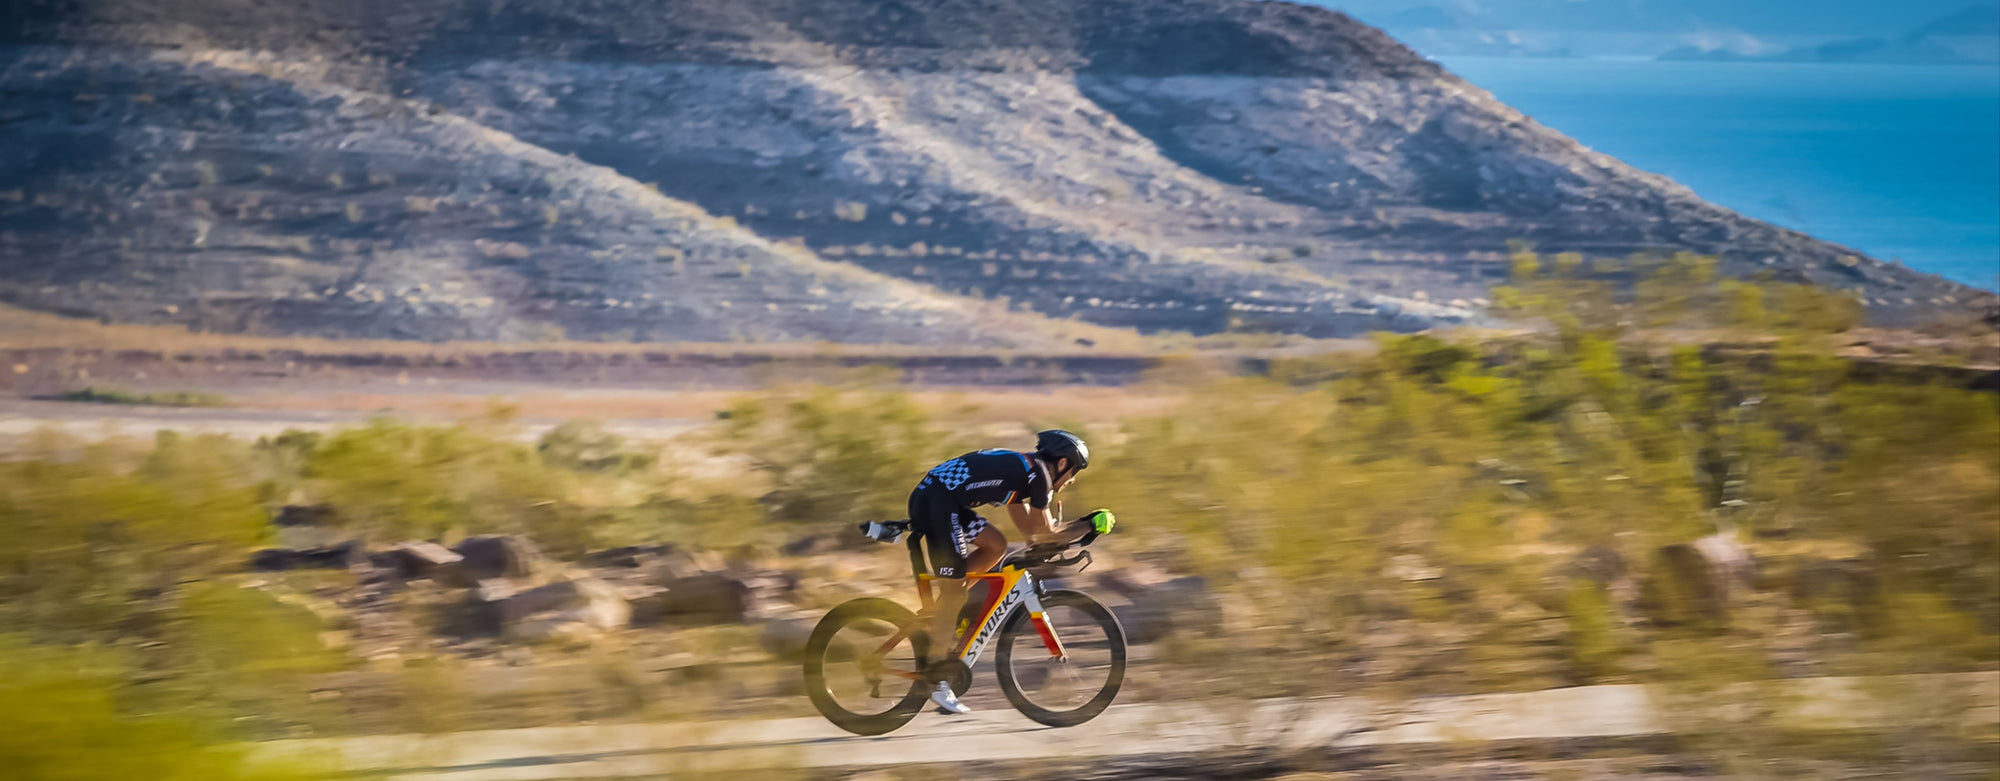 triathlete in desert